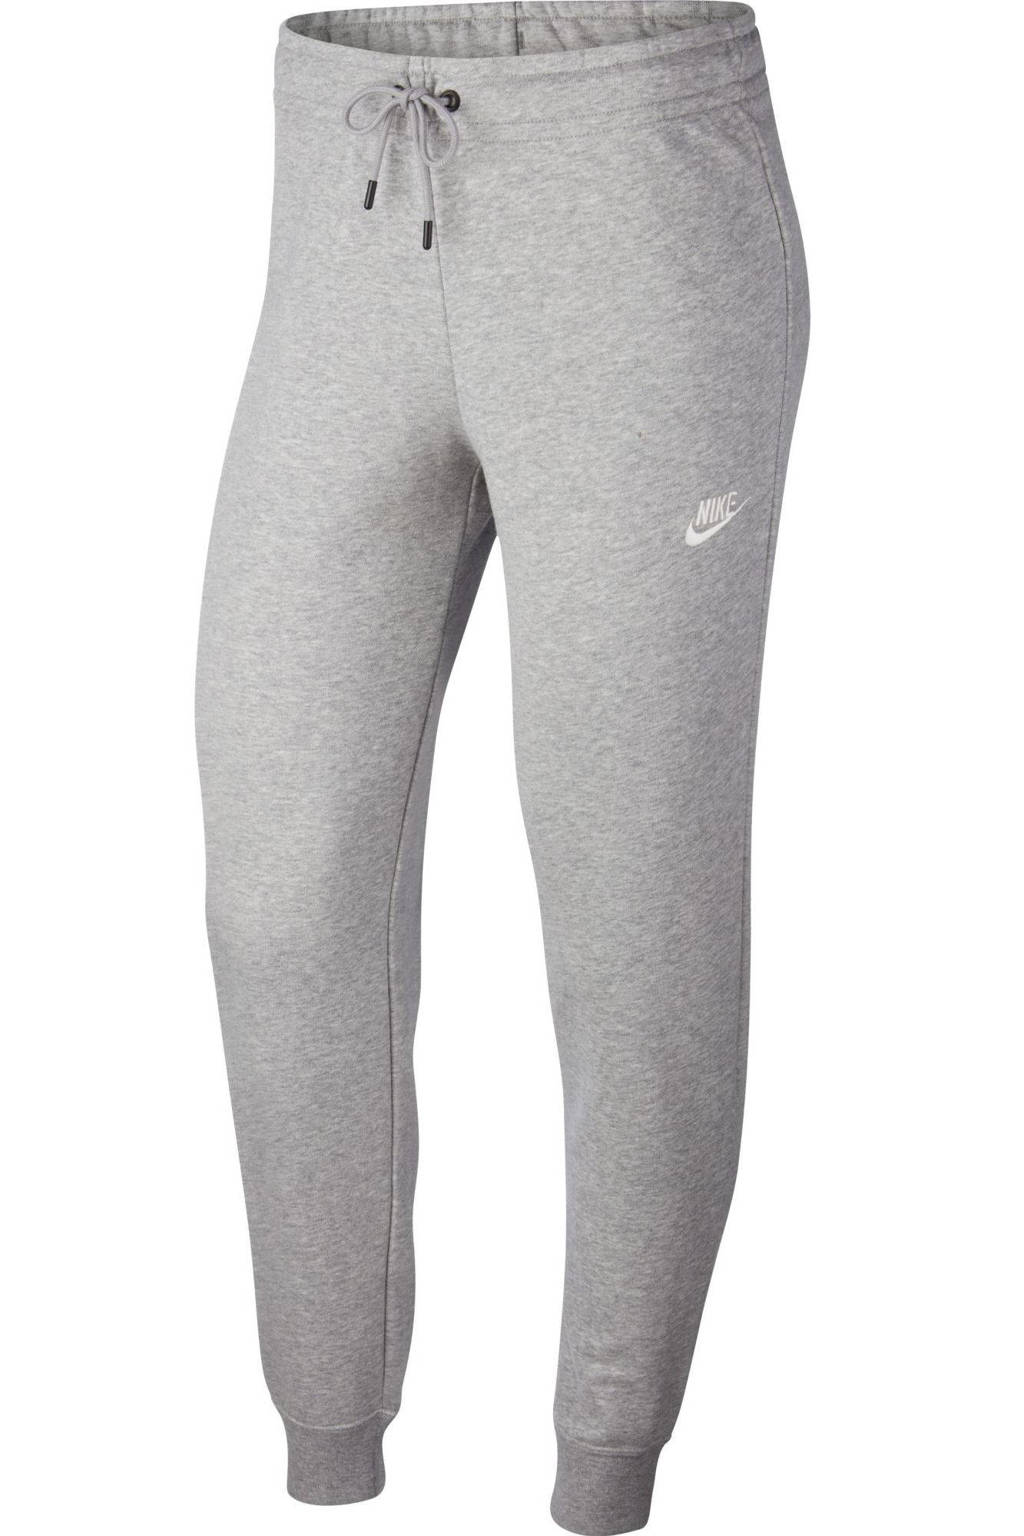 Nike joggingbroek grijs melange, Grijs melange/wit